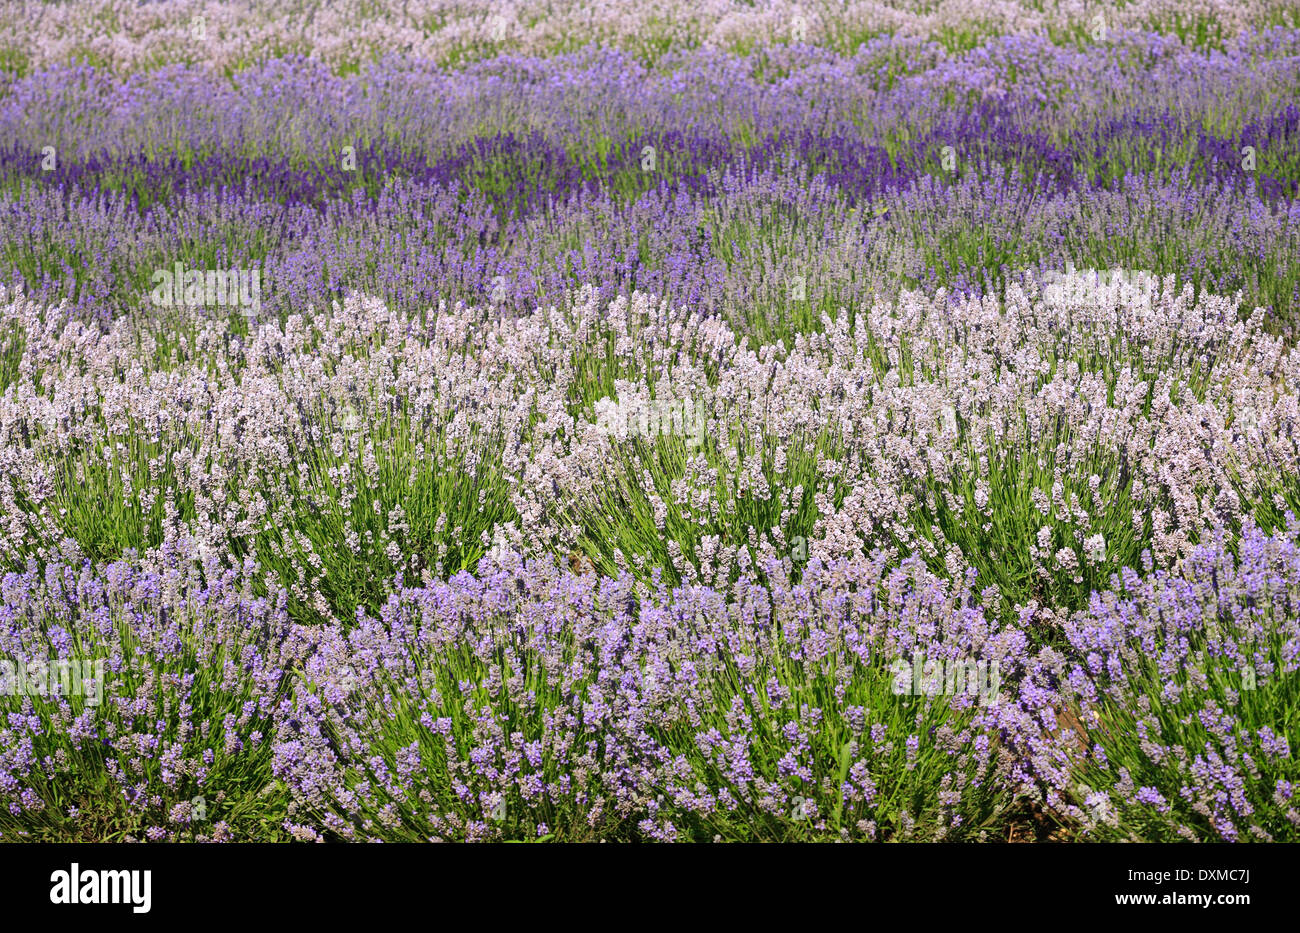 Varieties of Lavender growing at Heacham in Norfolk. Stock Photo